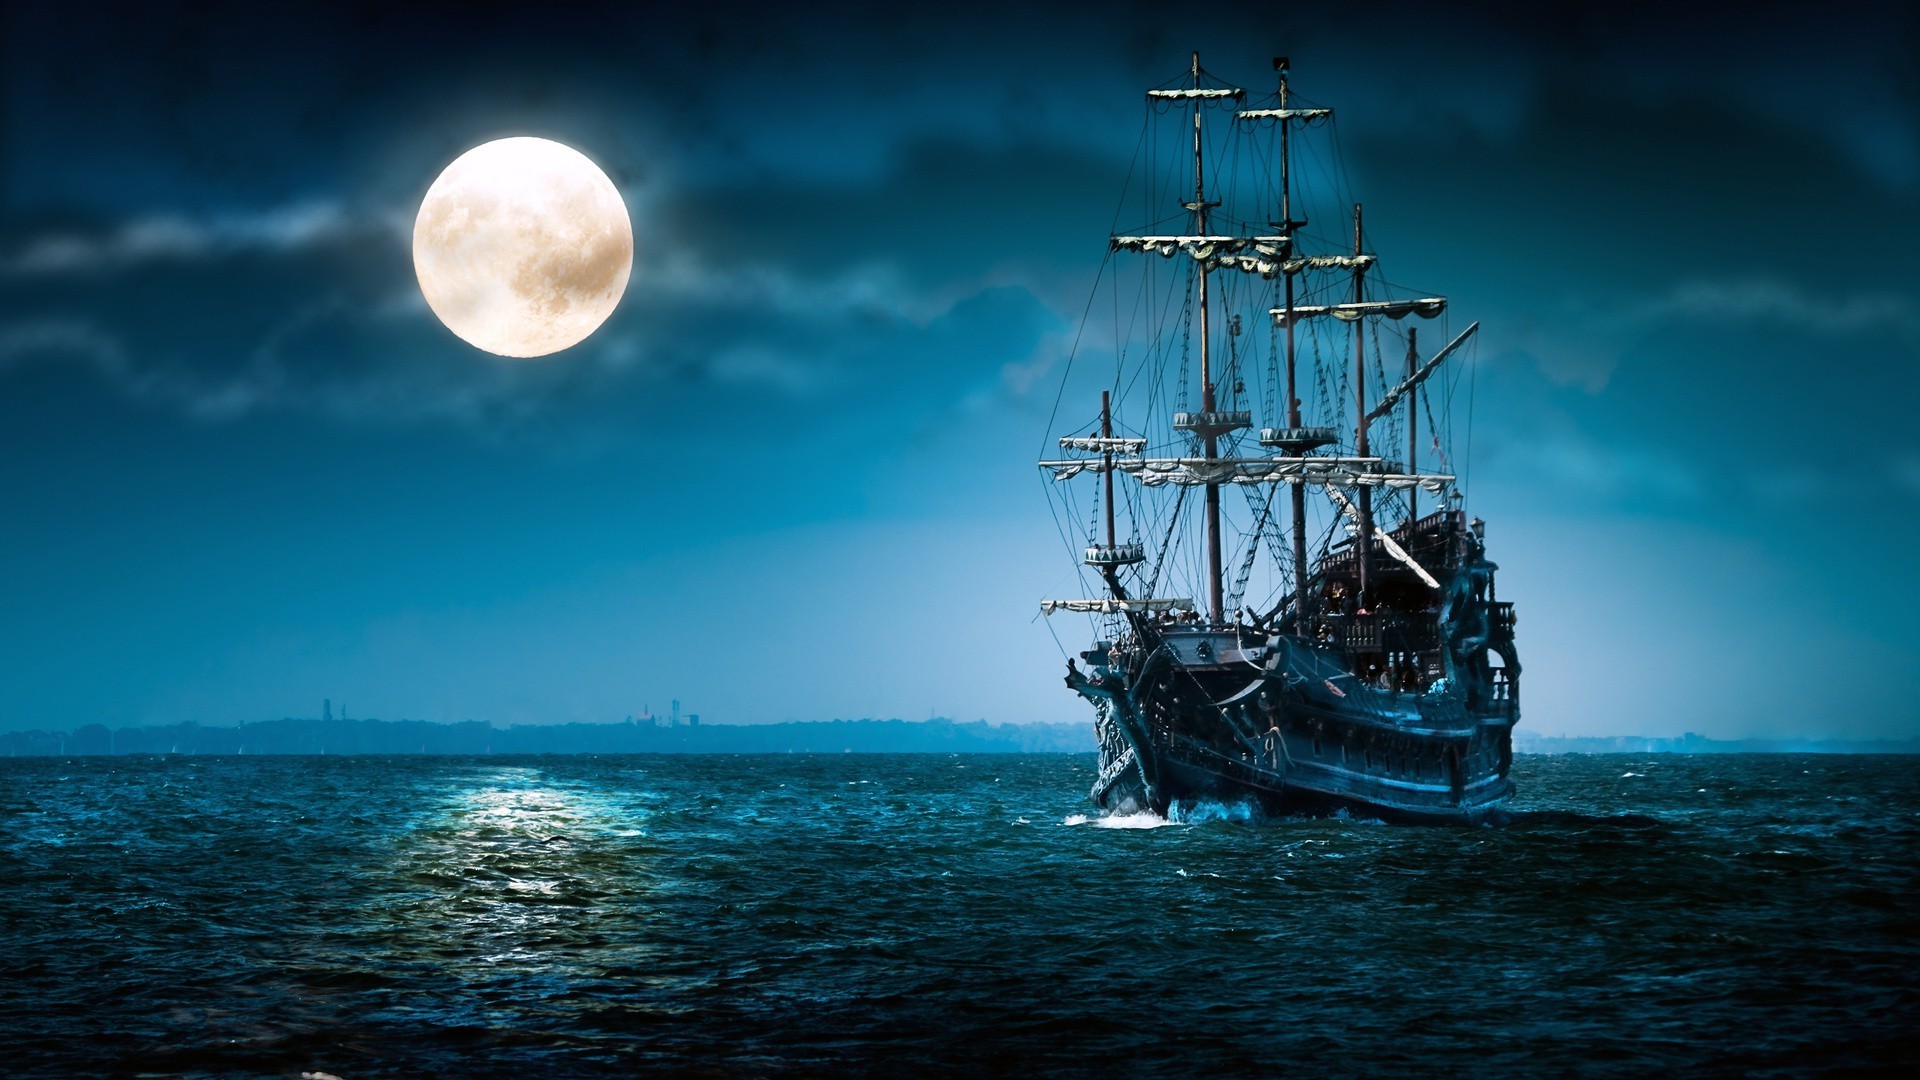 ночь вечер сумерки вечерние сумерки воды море океан лодка плавсредство закат небо корабль парусник транспортная система путешествия солнце